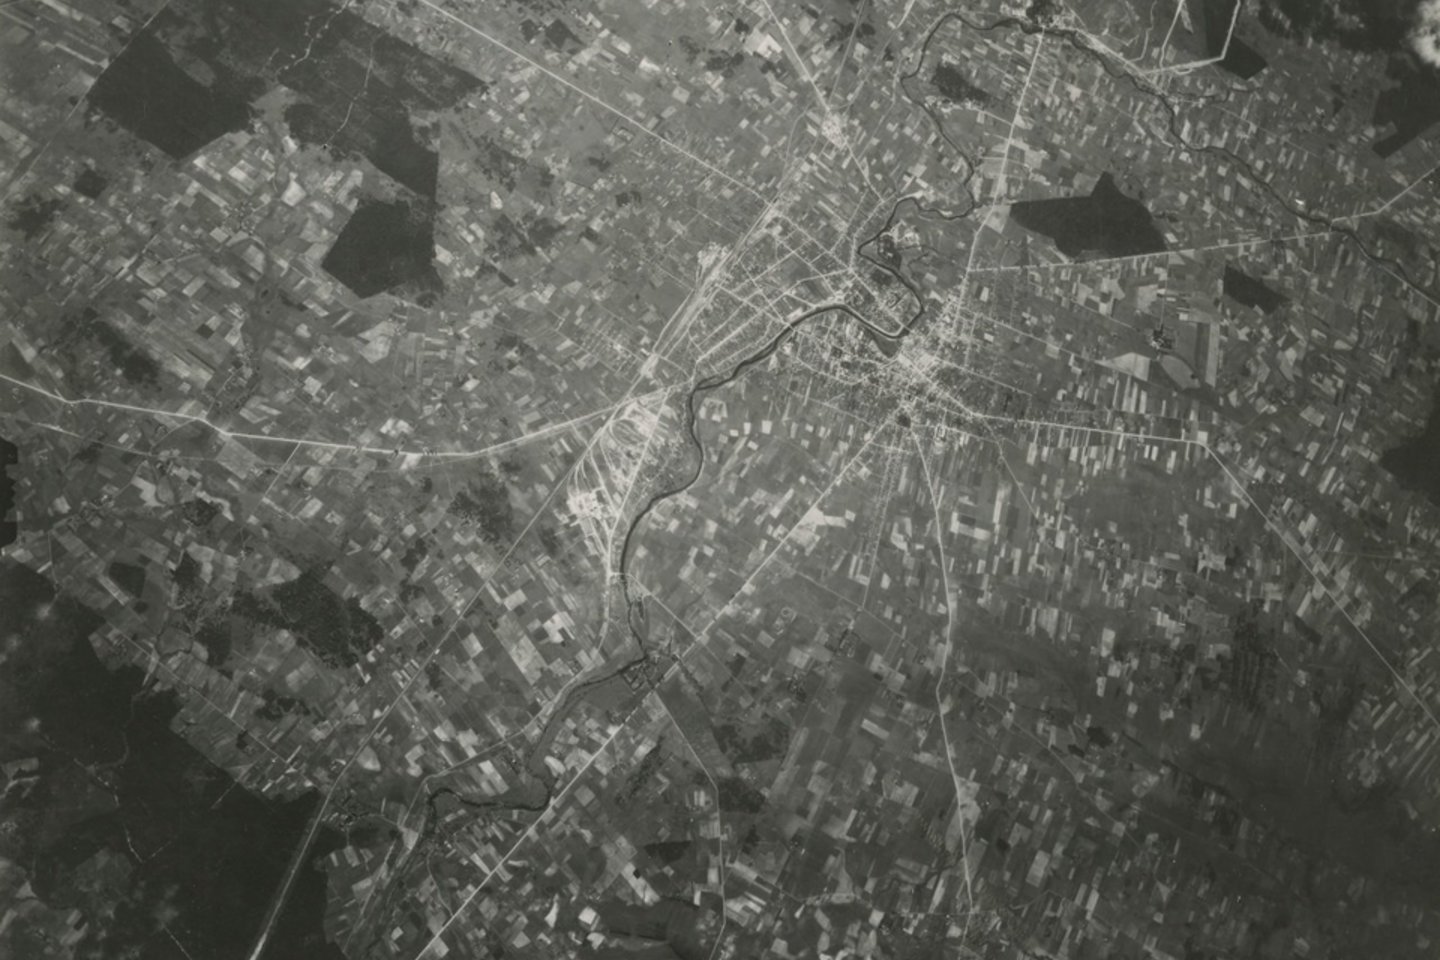 Panevėžio miestas 1944 m. liepos 29 d.<br>Lietuvos centrinio valstybės archyvo (LCVA) skaitmenintų aerofotografijų kolekcija iš JAV nacionalinio archyvo (National Archives and Records Administration (NARA)